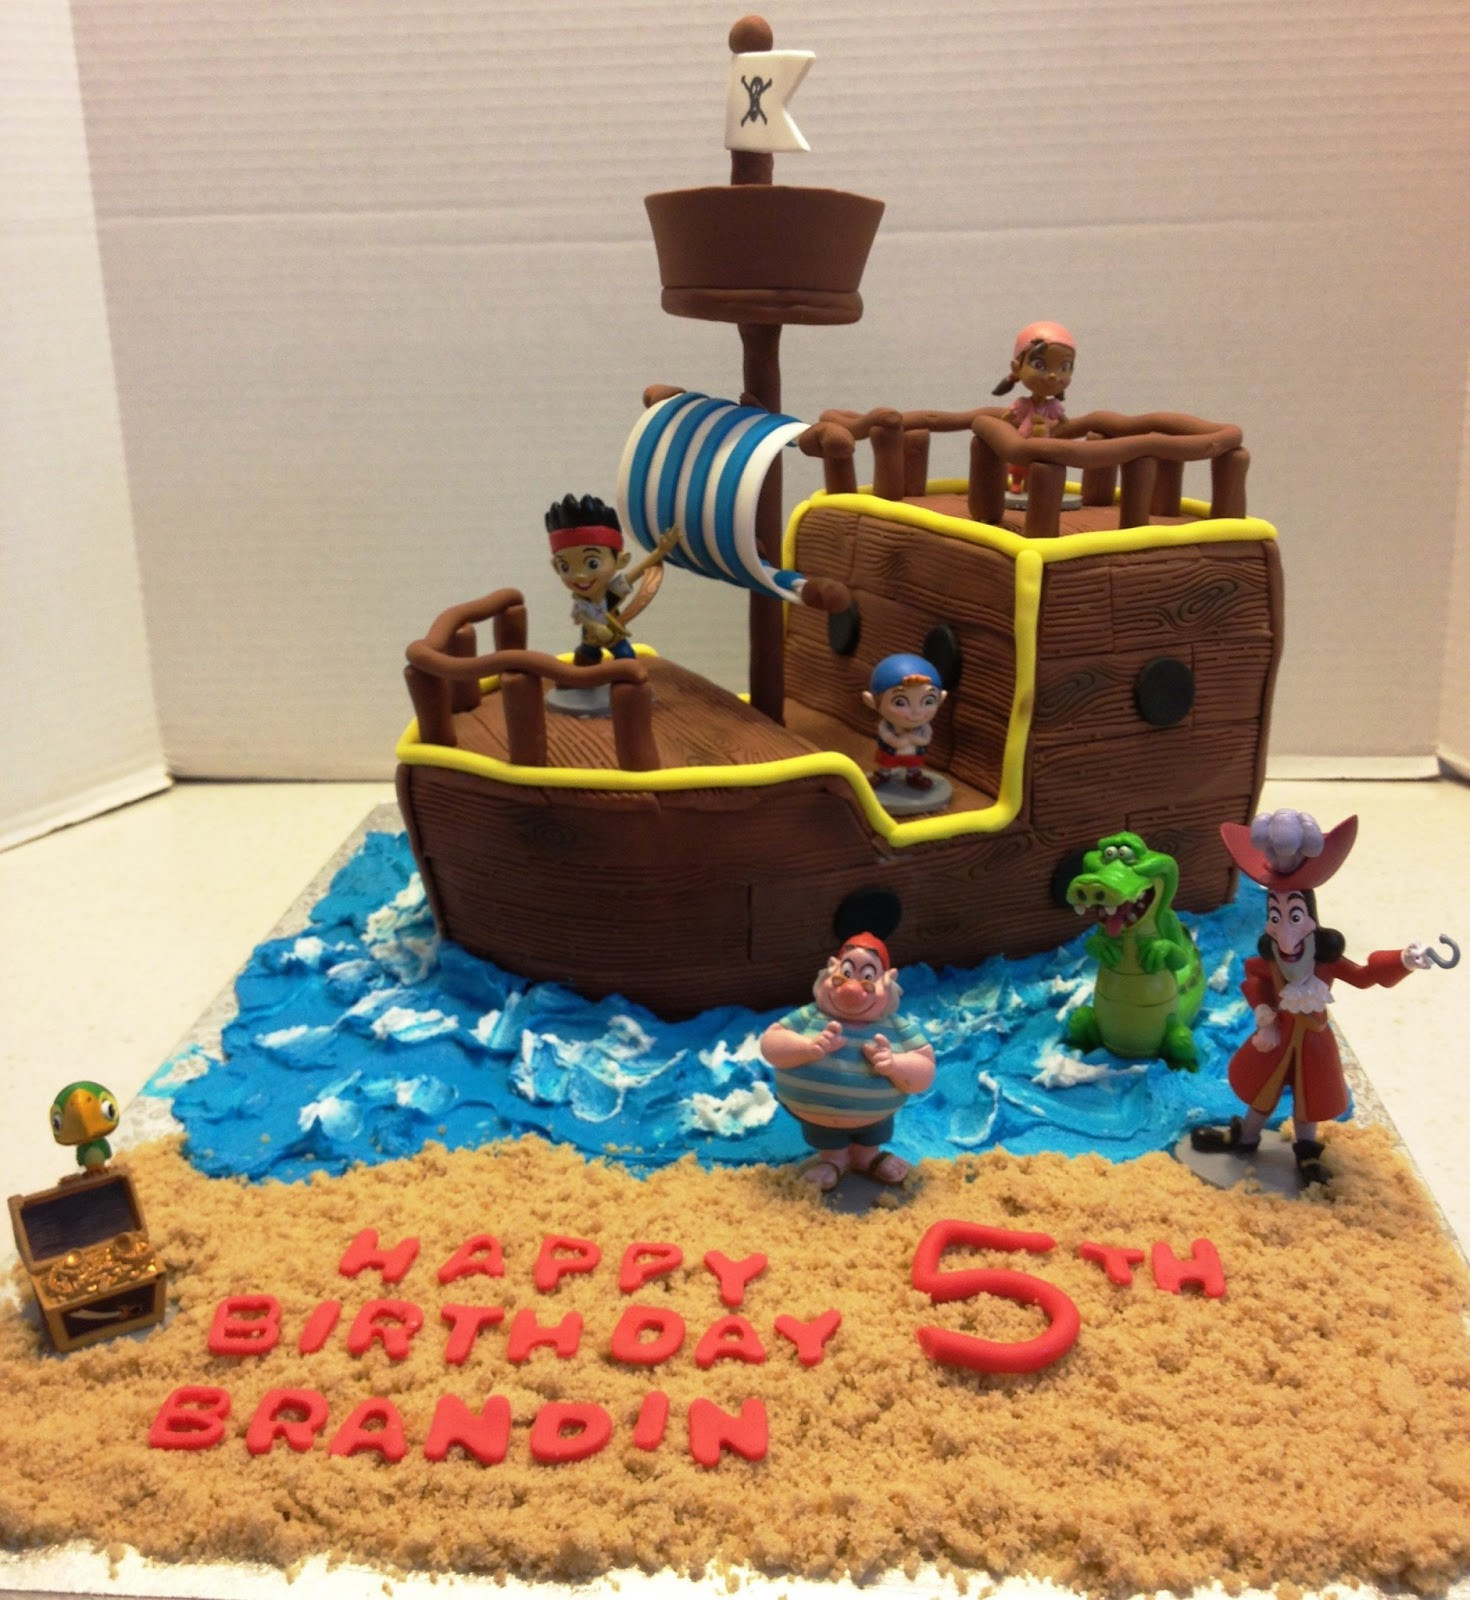 Jake And The Neverland Pirates Birthday Cake
 MaryMel Cakes Jake & the Neverland Pirates